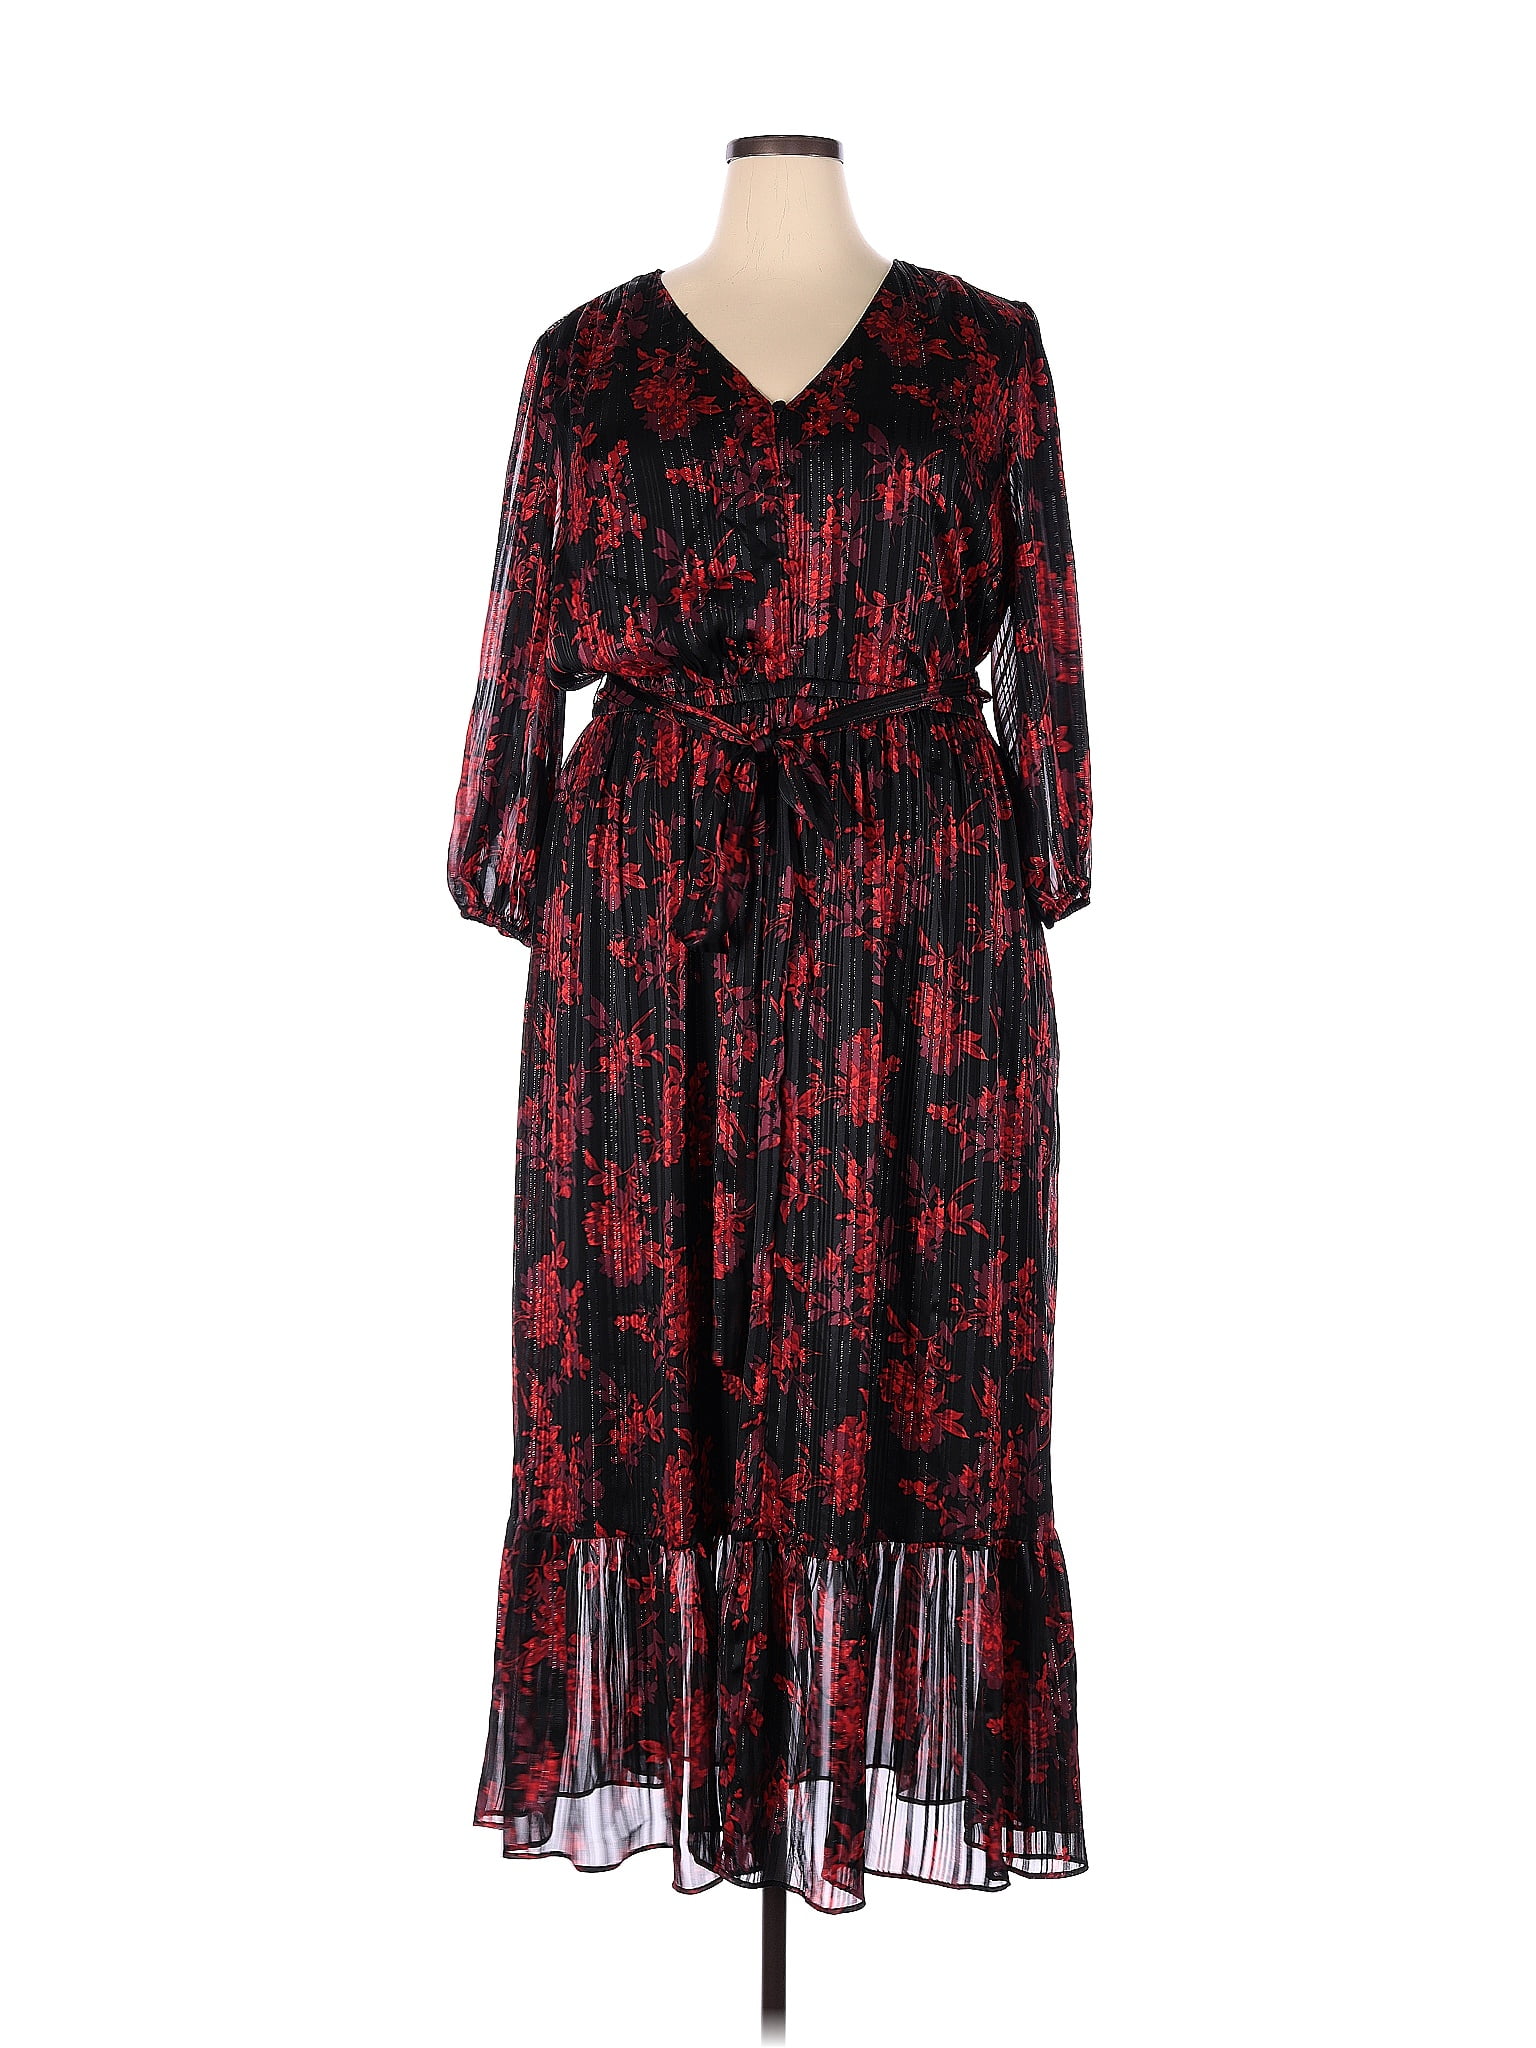 Lane Bryant Floral Multi Color Black Casual Dress Size 20 (Plus) - 63% ...